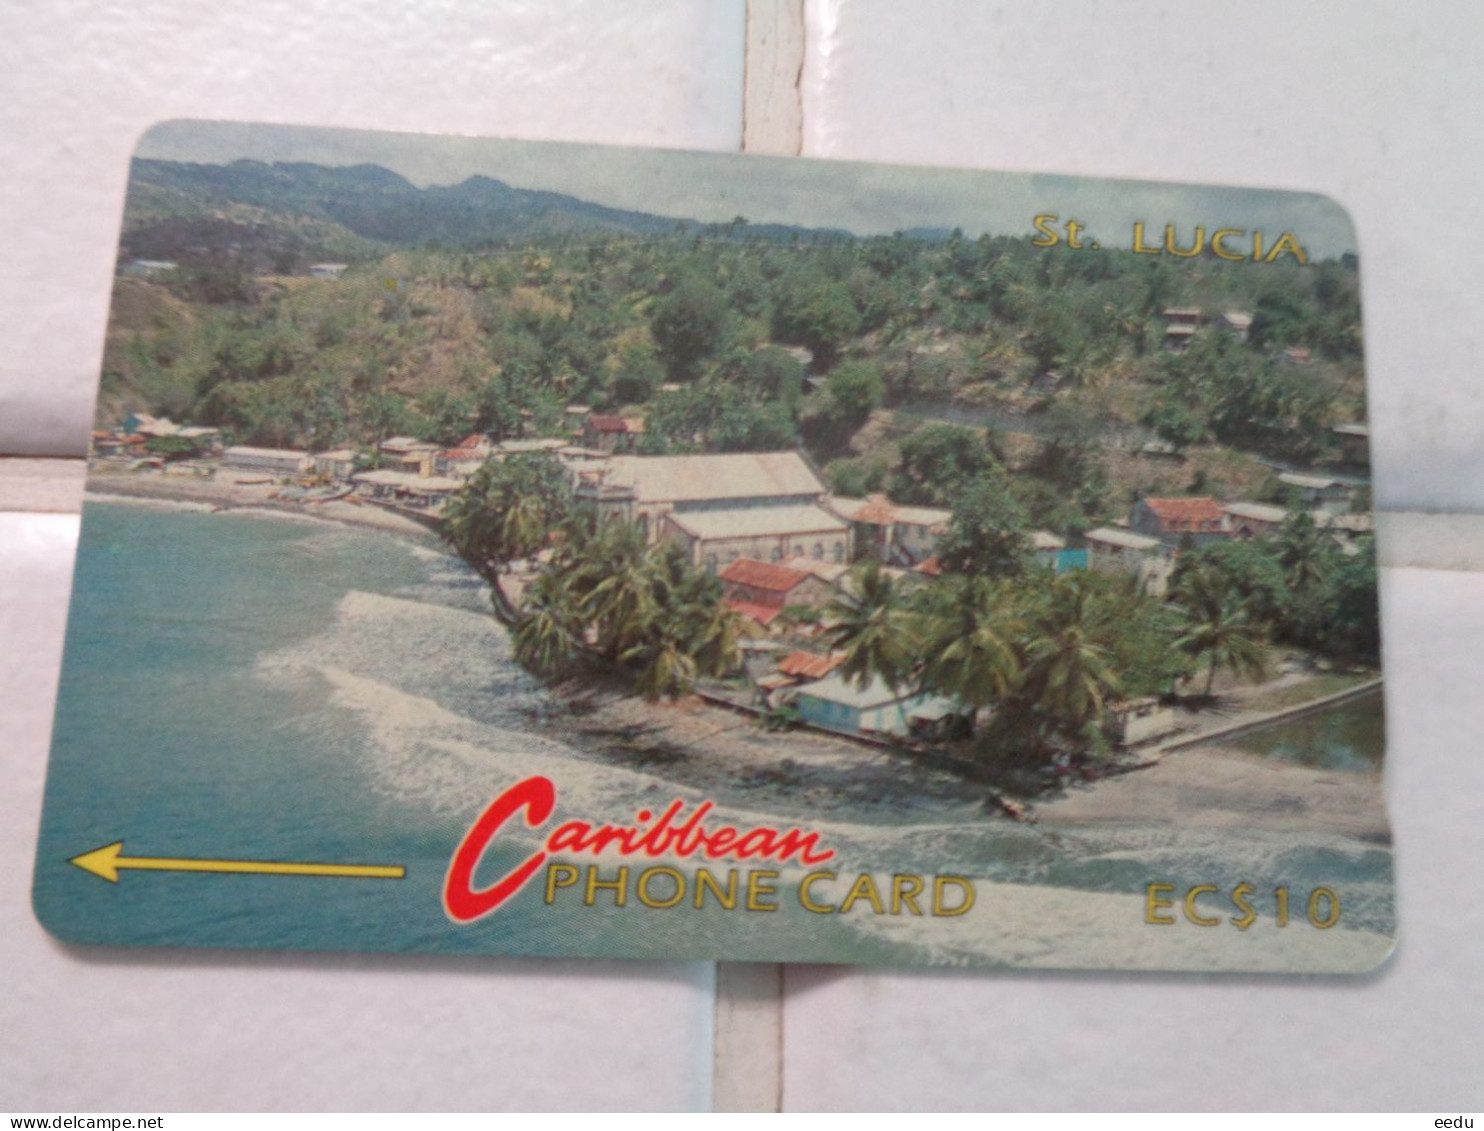 St.Lucia Phonecard - Santa Lucía